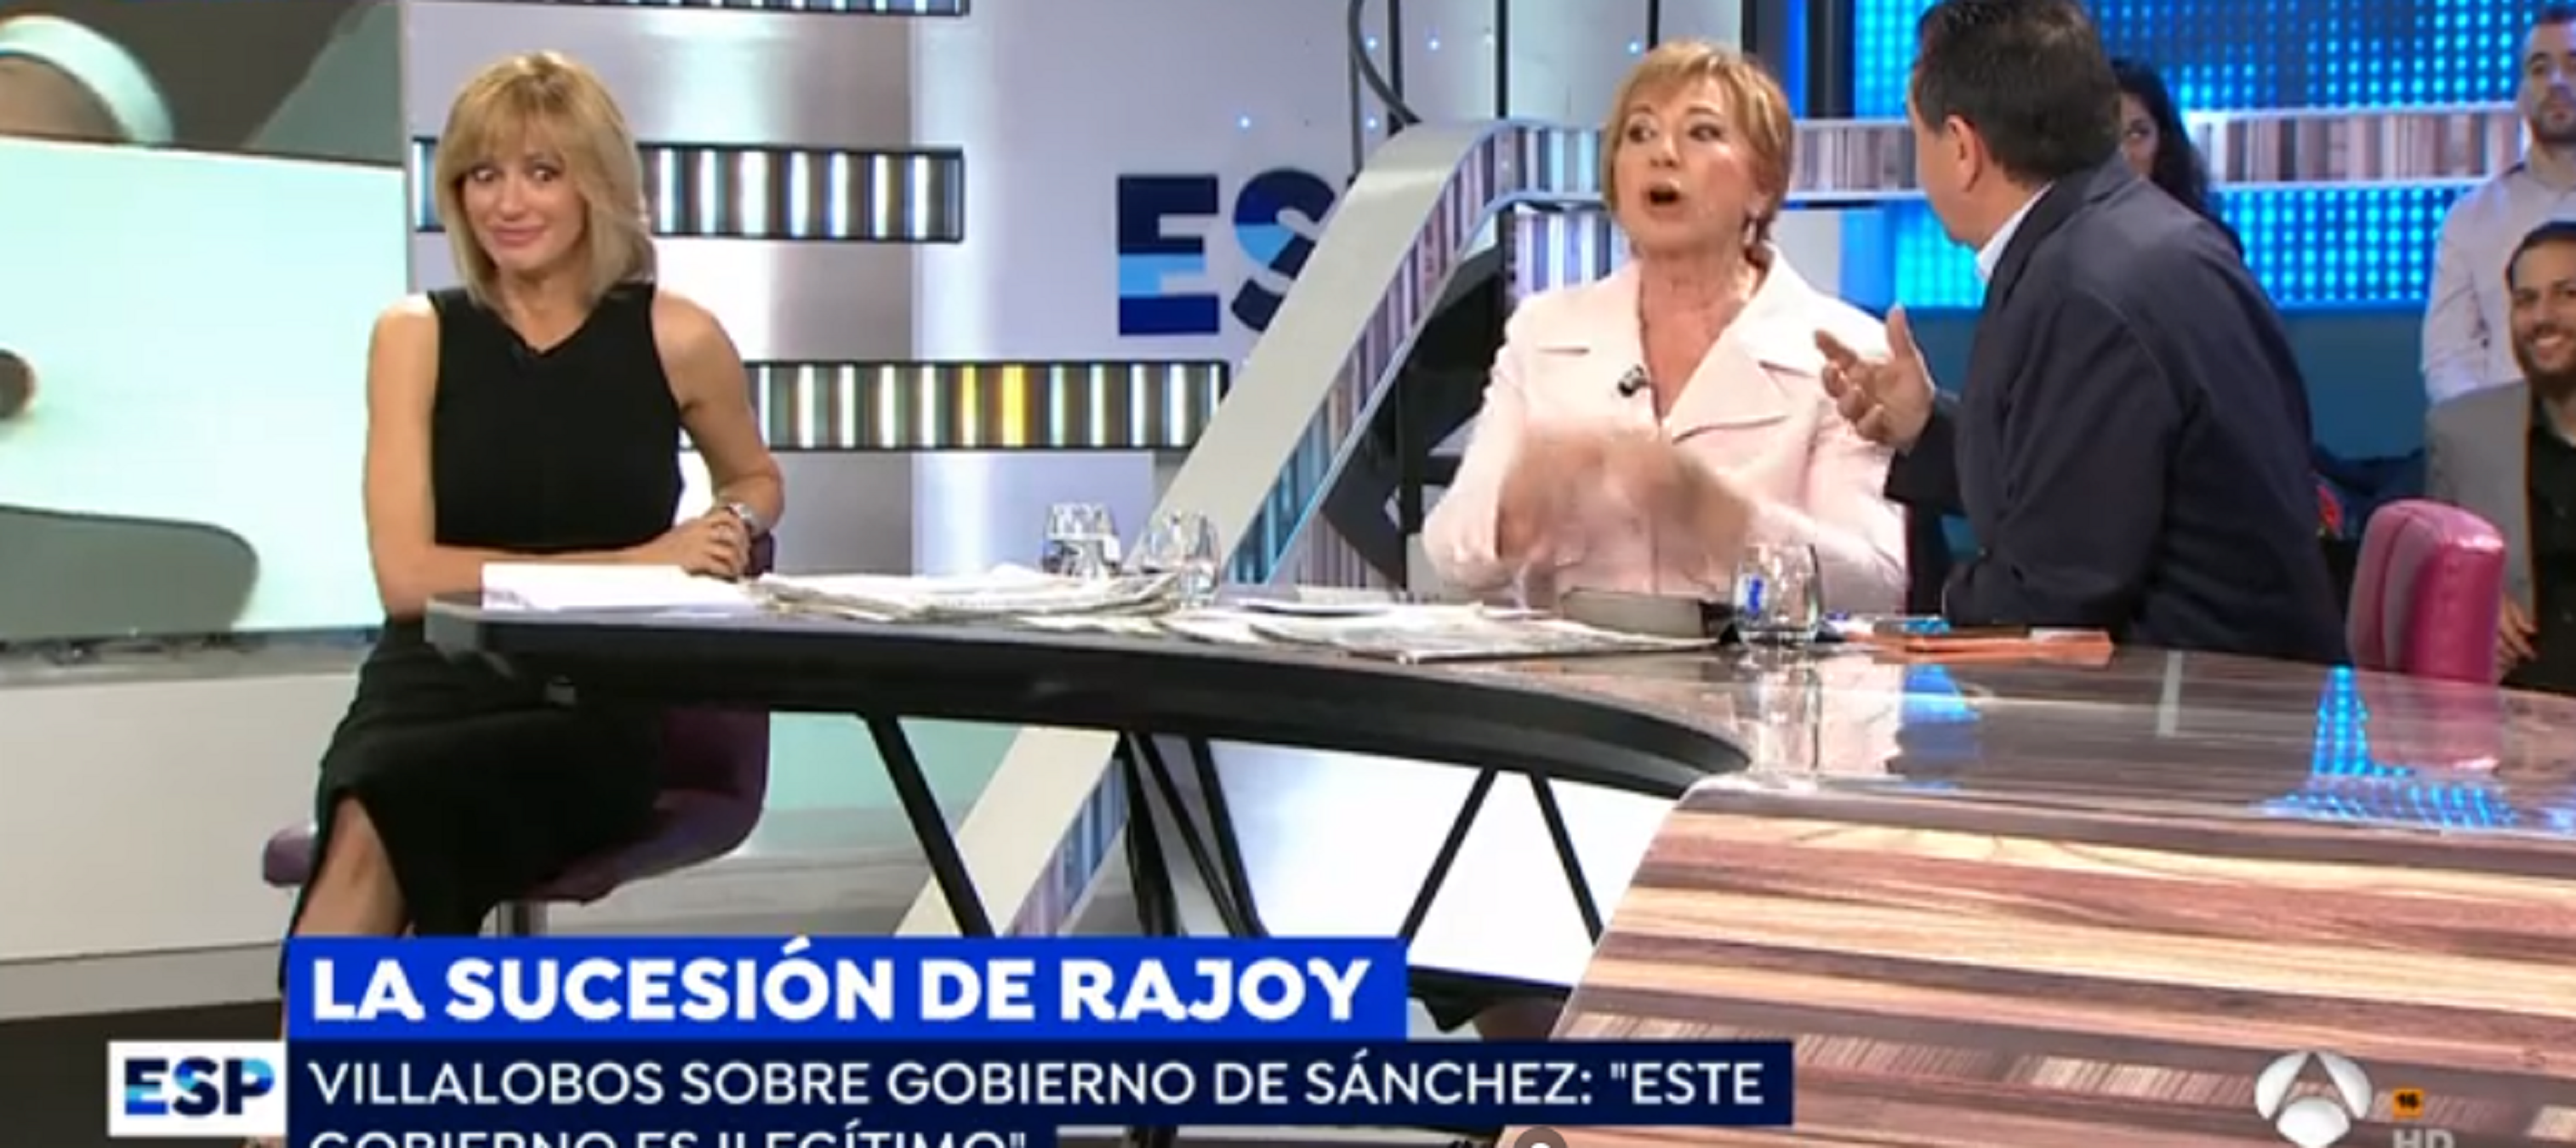 Celia Villalobos no paeix el canvi de govern i es posa a cridar a Antena 3